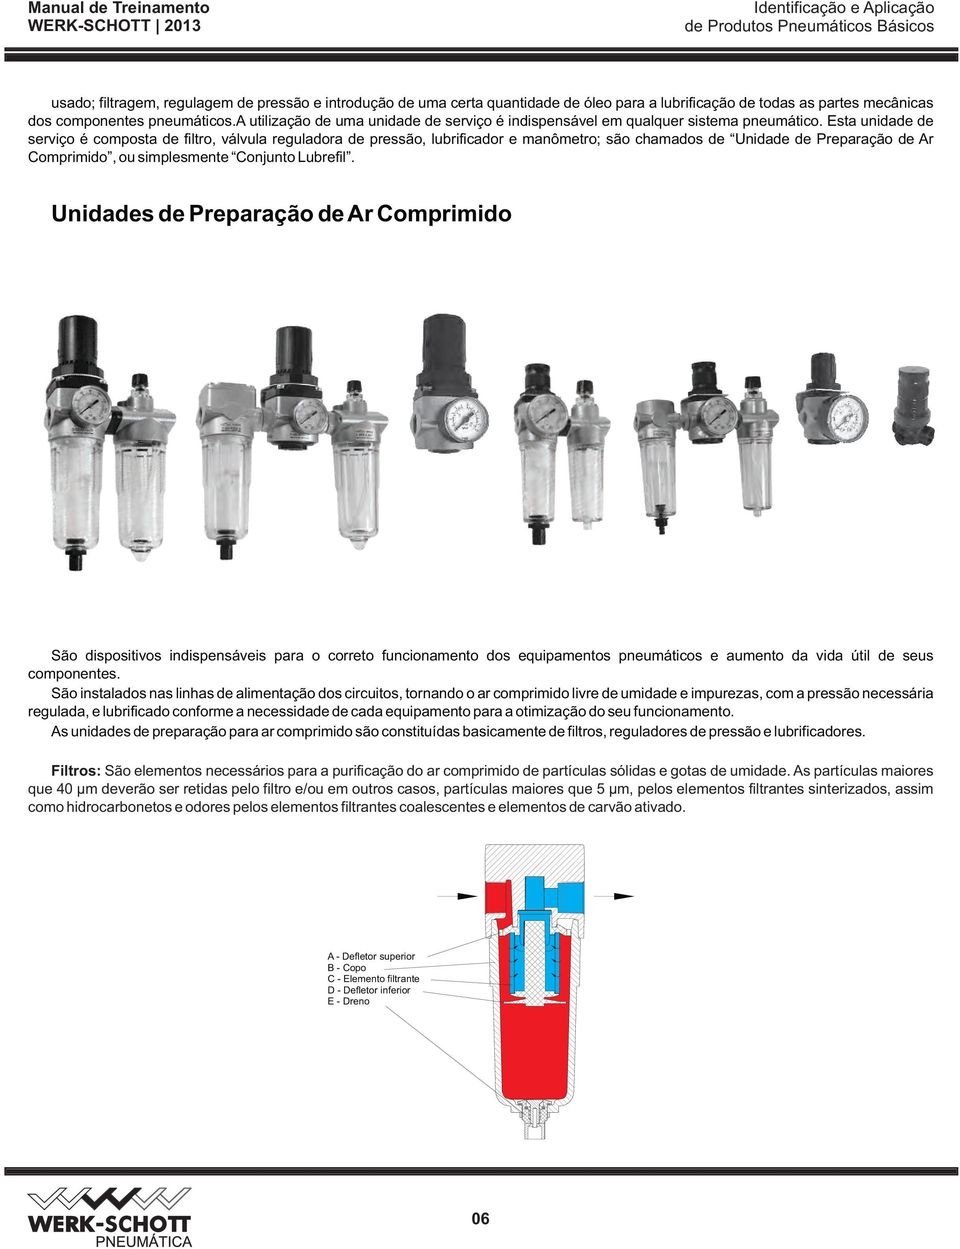 Esta unidade de serviço é composta de filtro, válvula reguladora de pressão, lubrificador e manômetro; são chamados de Unidade de Preparação de Ar Comprimido, ou simplesmente Conjunto Lubrefil.